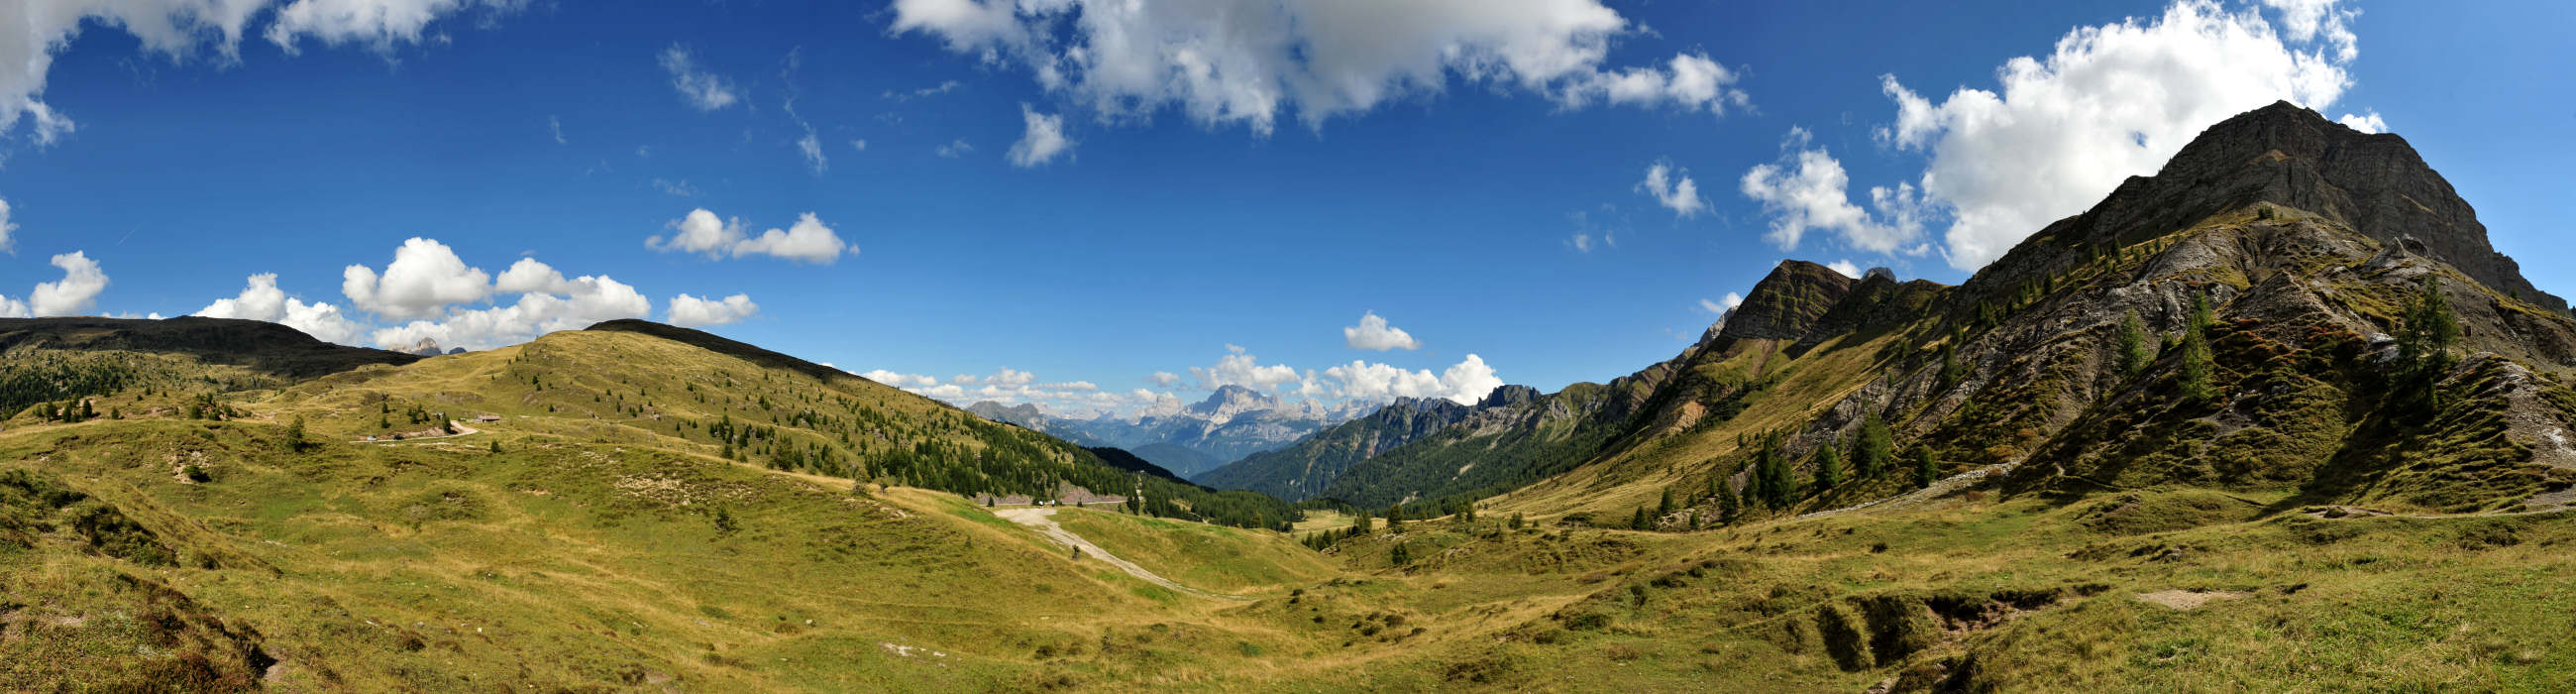 Passo Valles, Dolomiti, Pale di San Martino